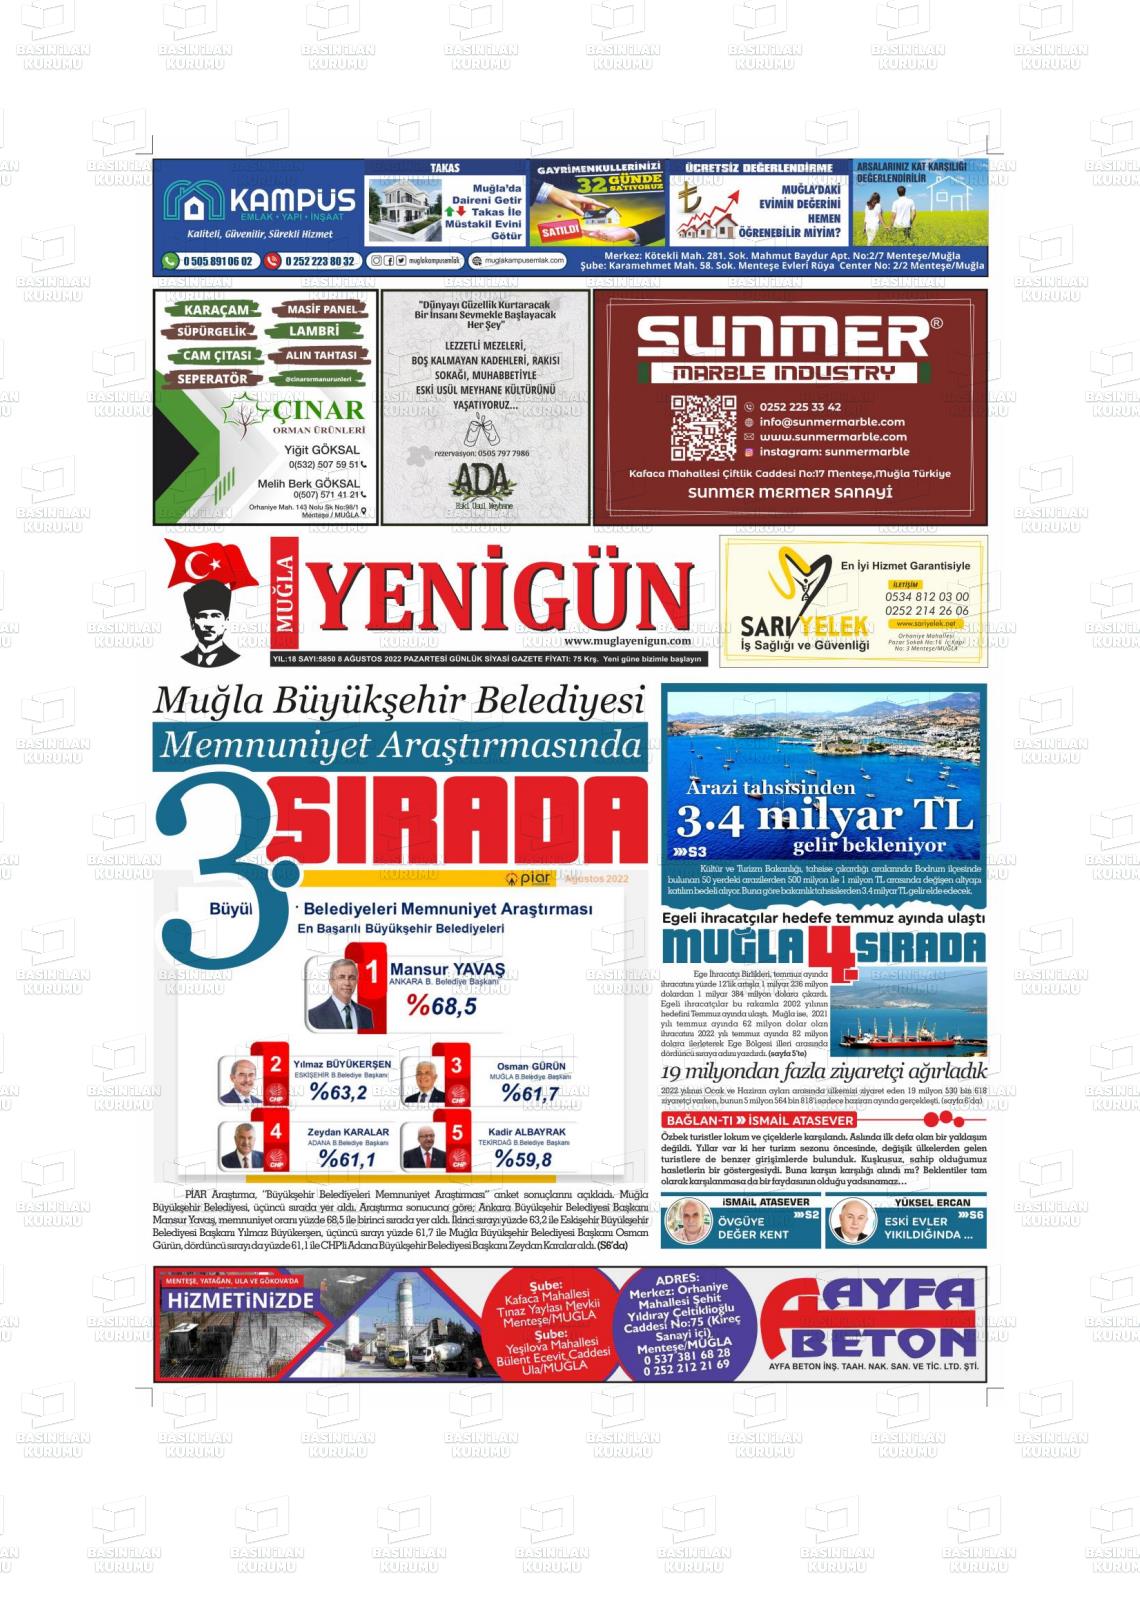 08 Ağustos 2022 Muğla Yenigün Gazete Manşeti